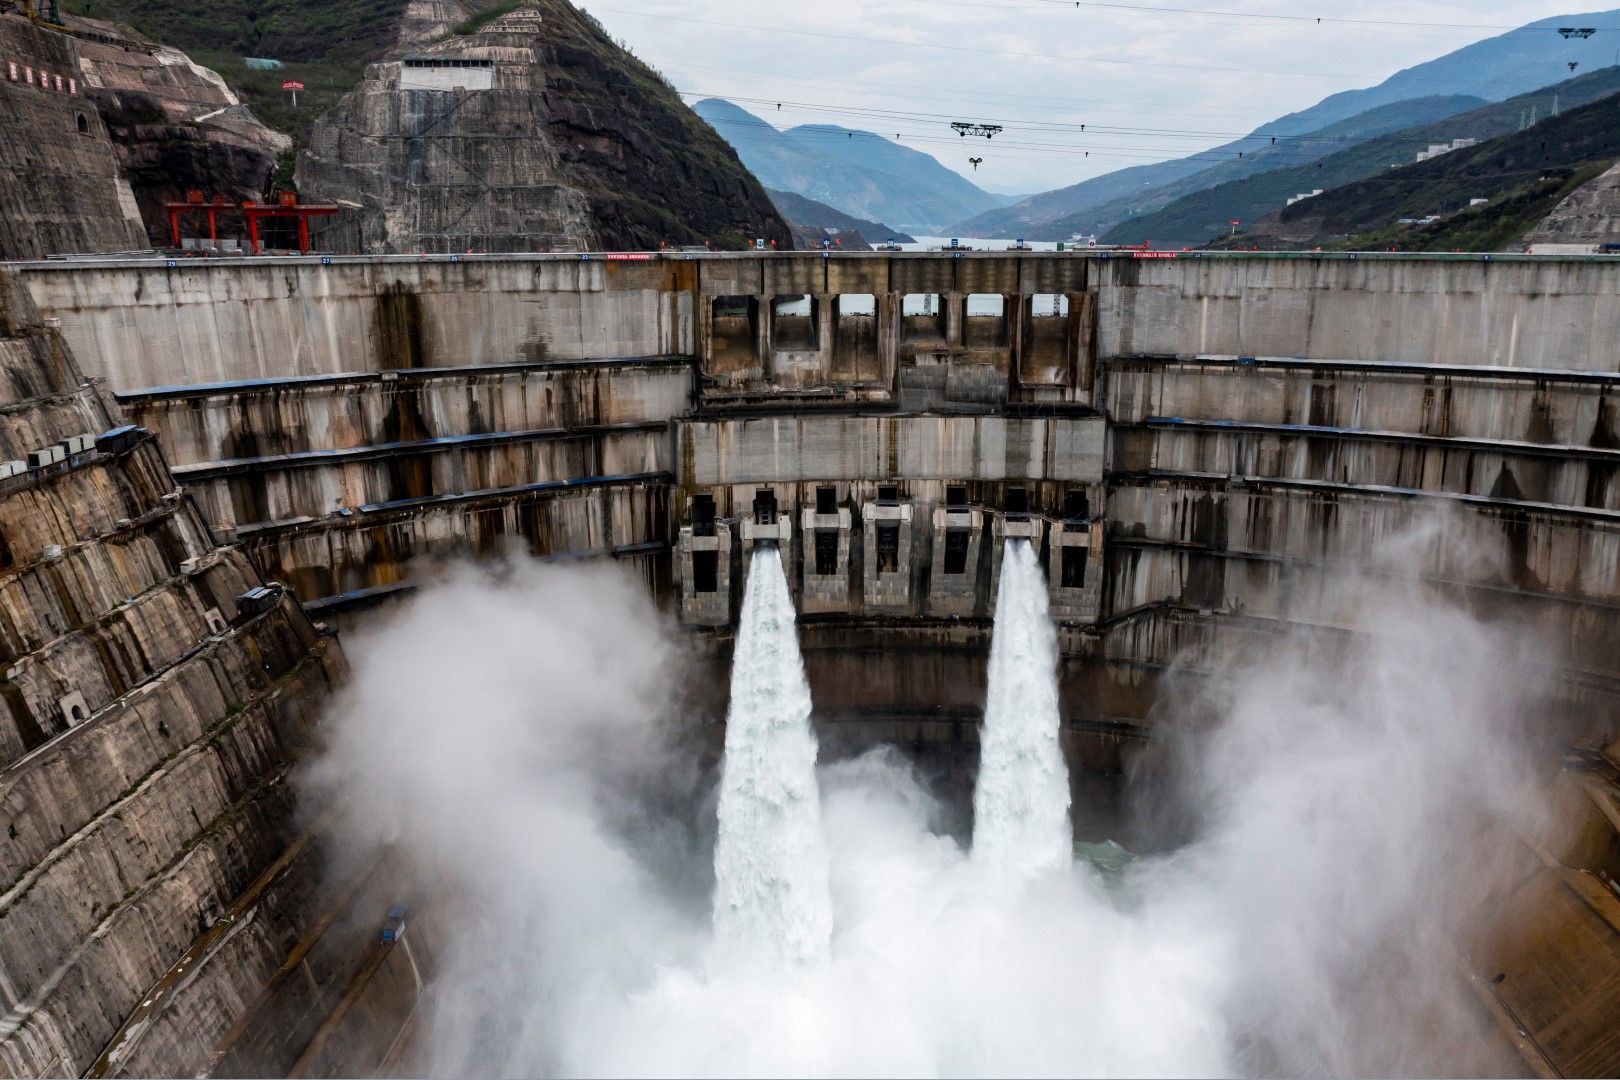 27 юни 2021 г., водата се изпуска от язовира на водноелектрическата централа "Байхътан" в Китай